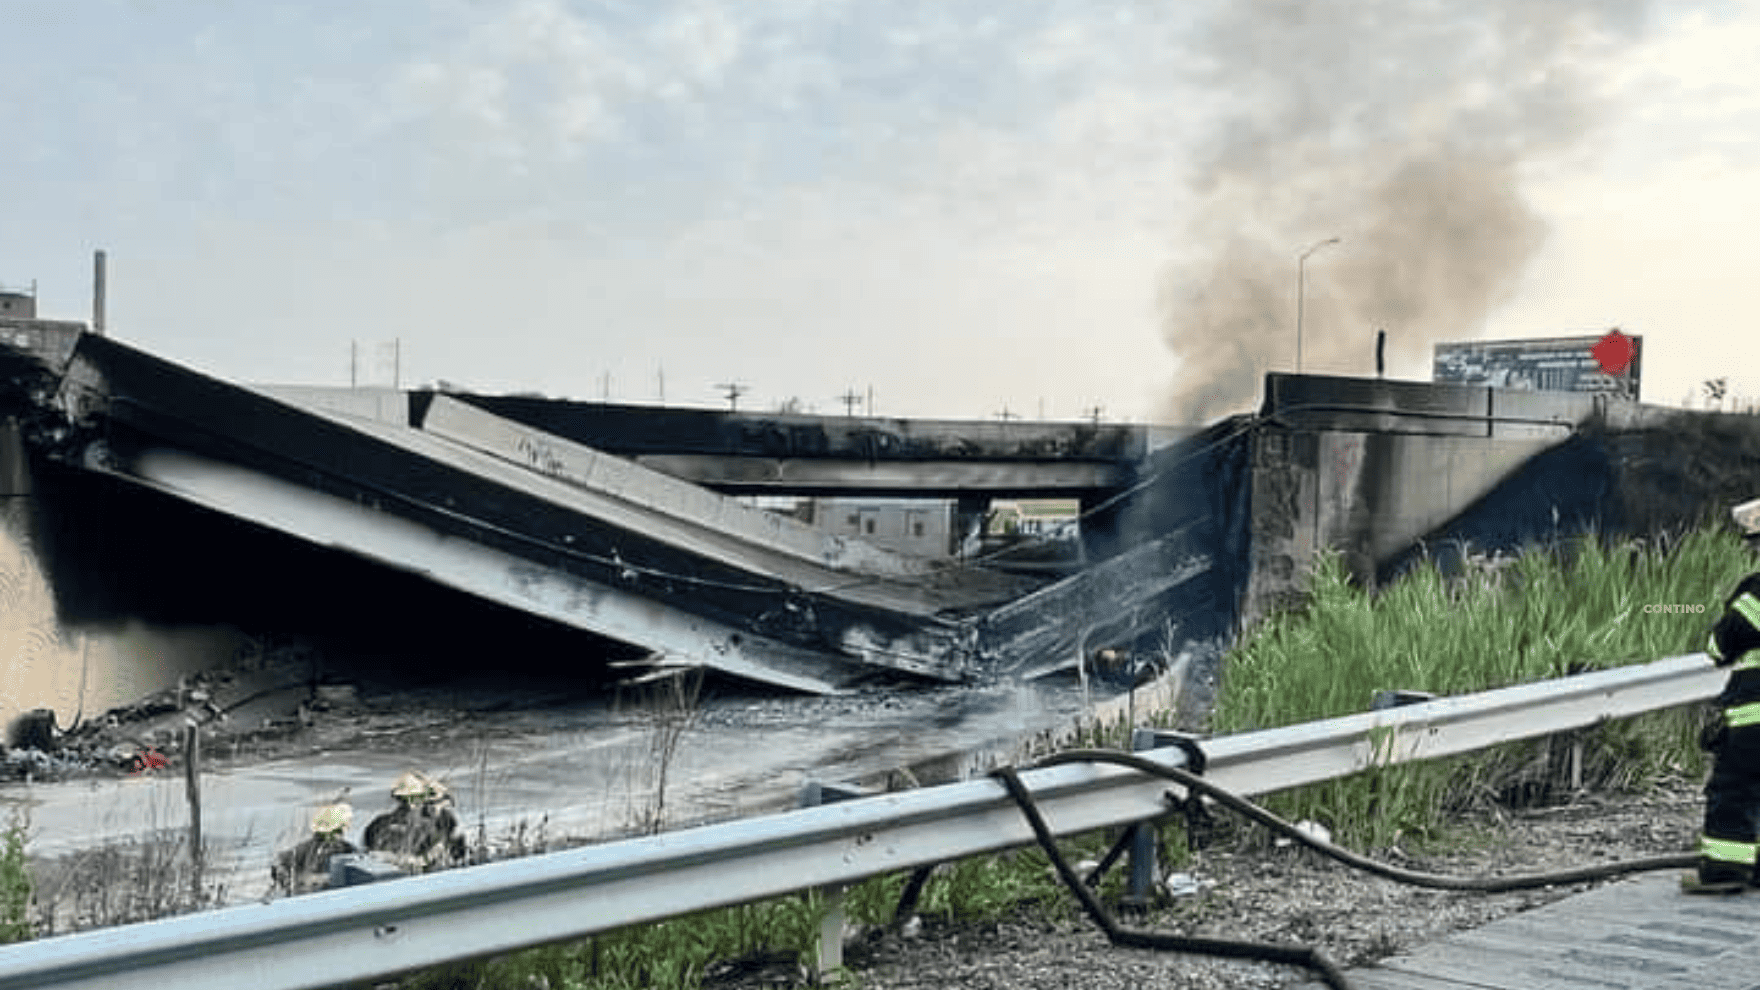 I-95 Bridge Collapse Update